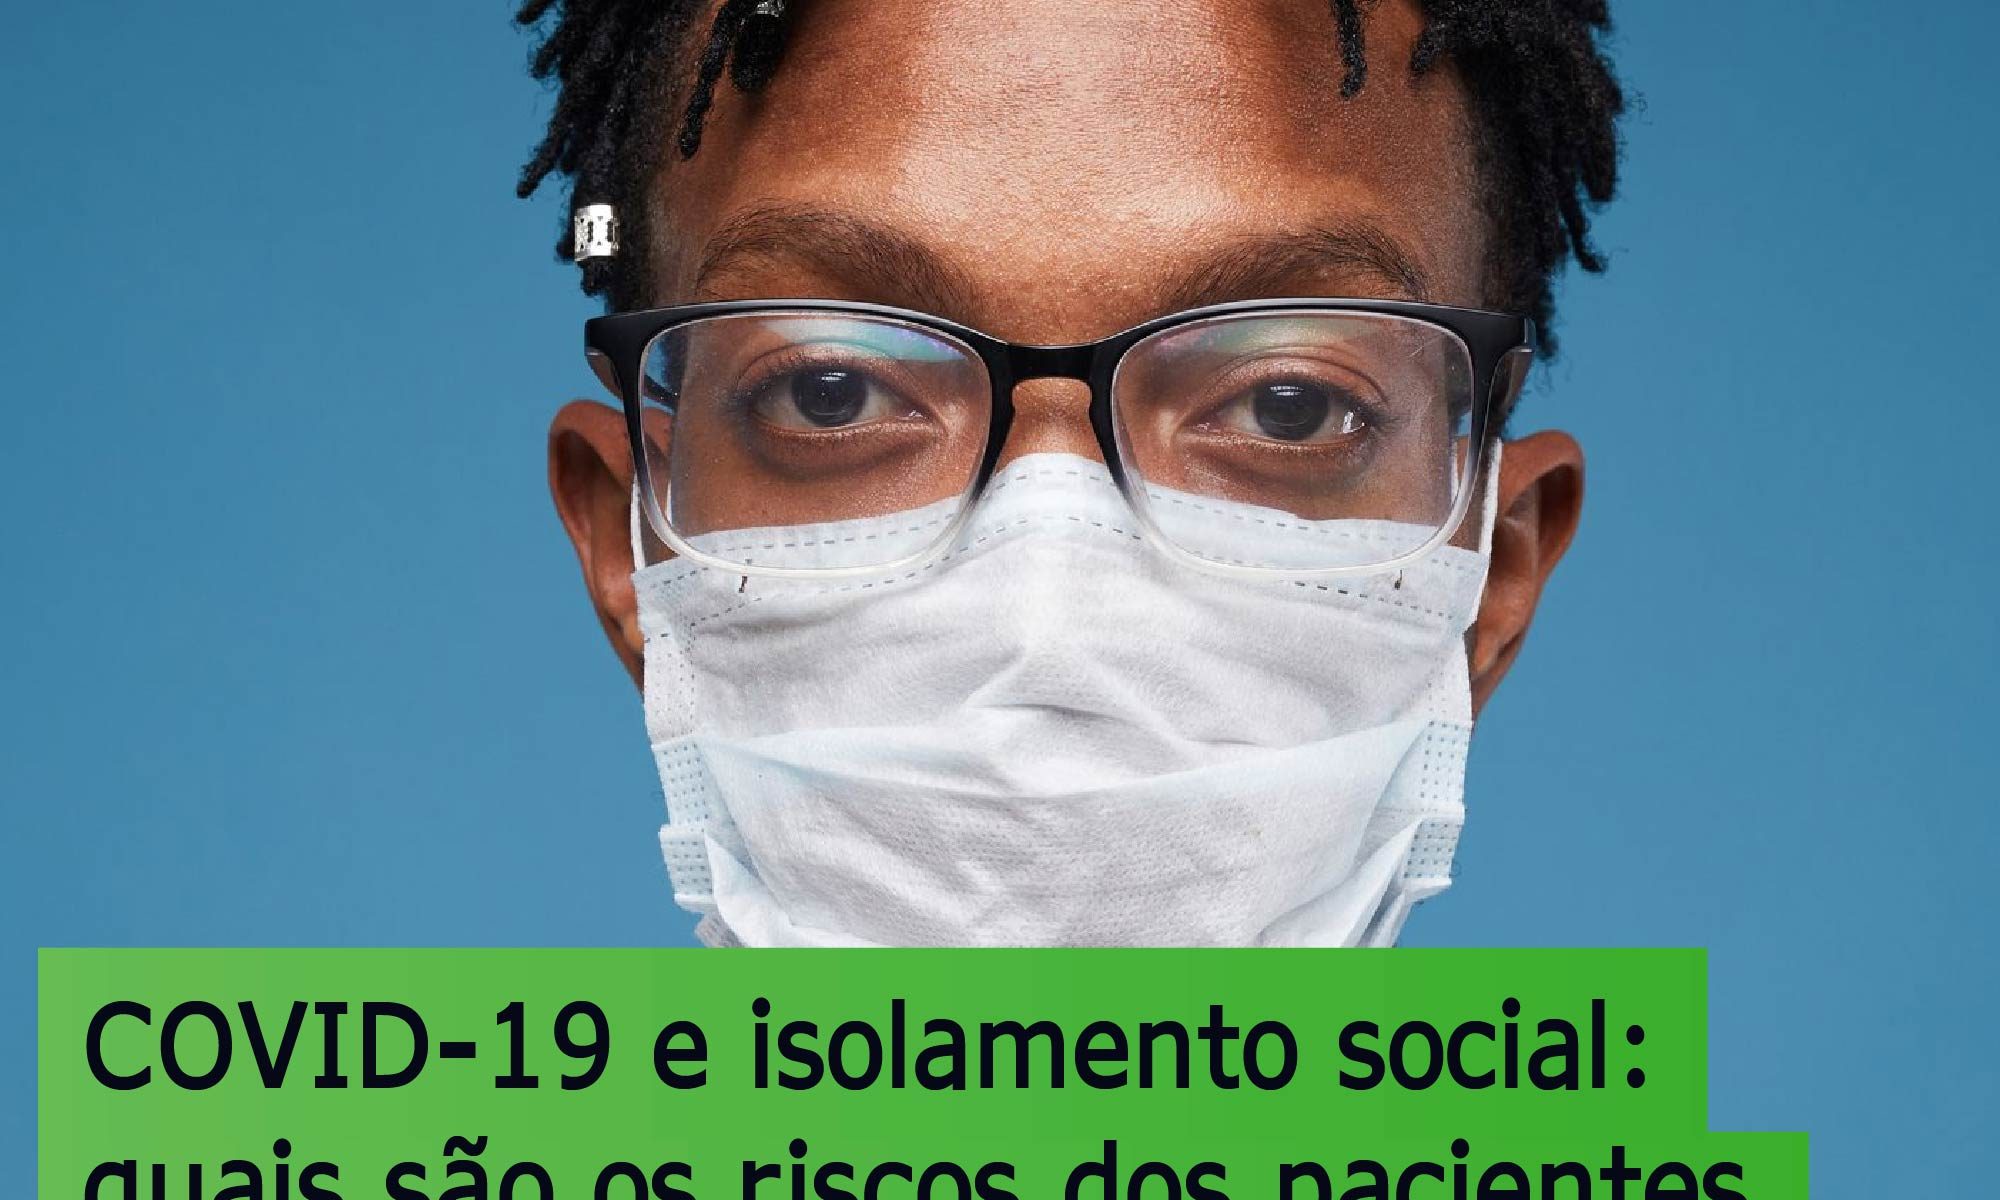 imagem de umhomem usando máscara e óculos. Está escrito: "COVID-19 e isolamento social: quais são os riscos dos pacientes não darem continuidade ao seu tratamento das doenças da retina"